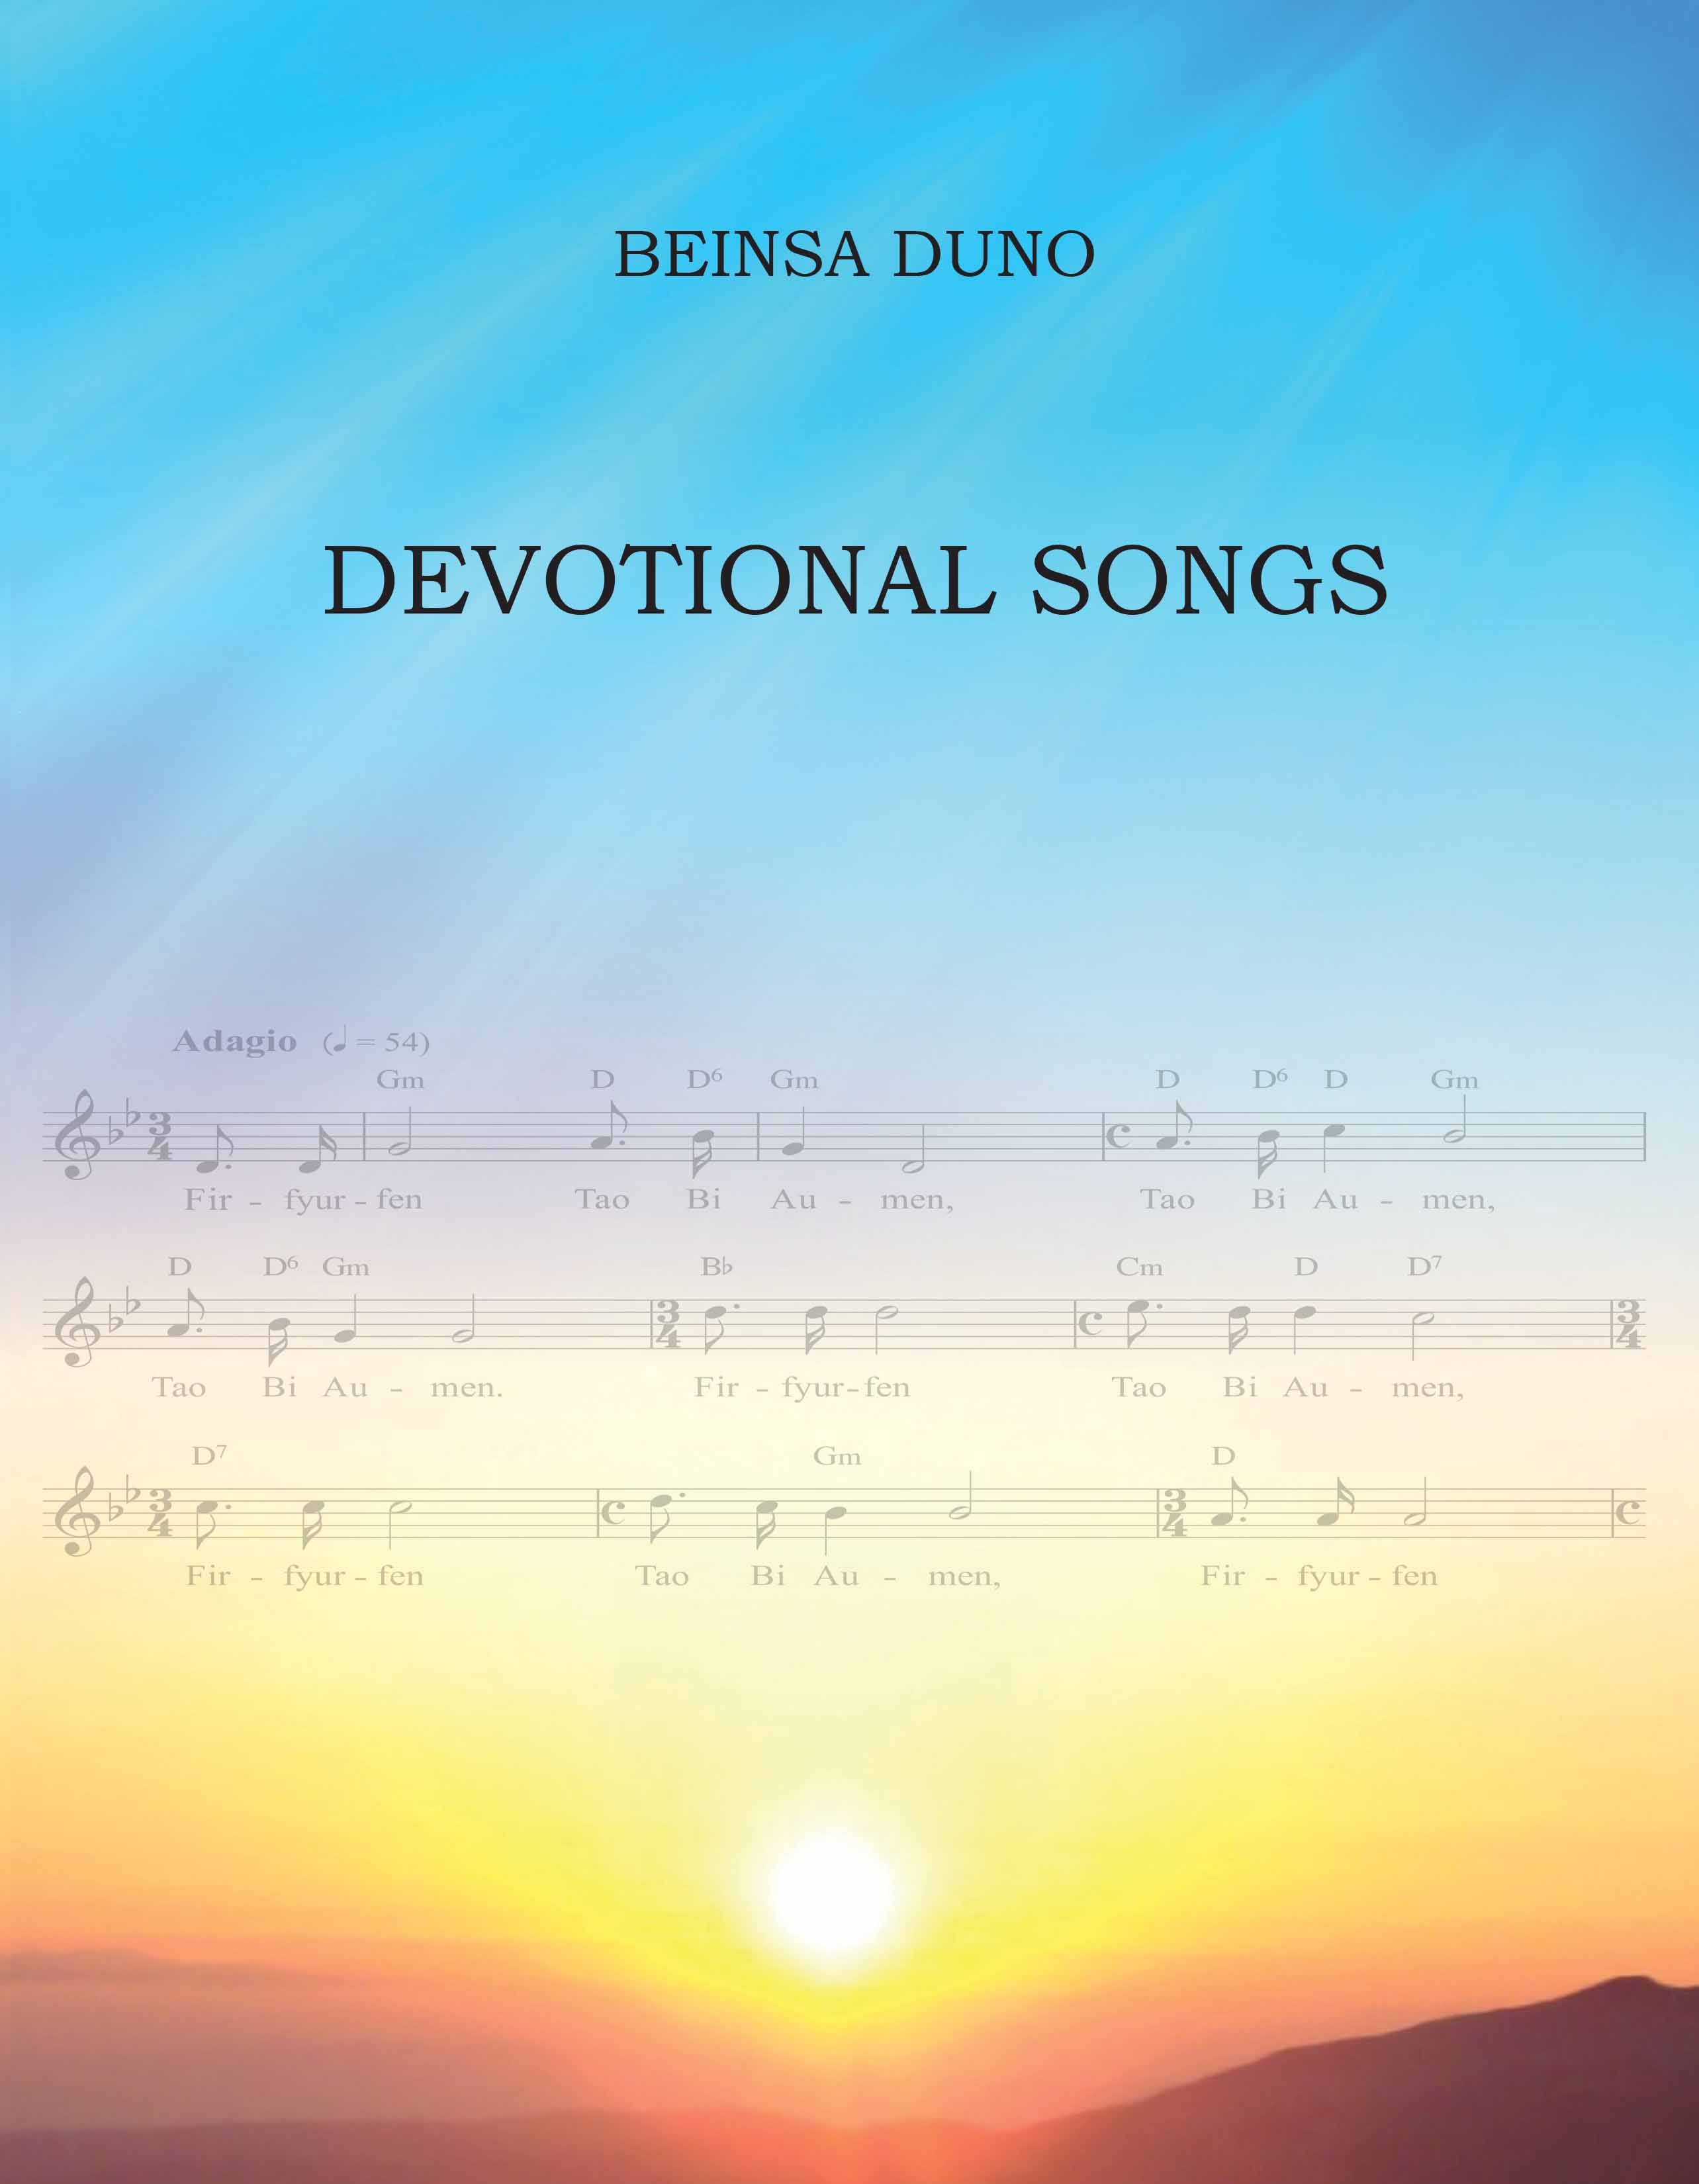 Devotional Songs